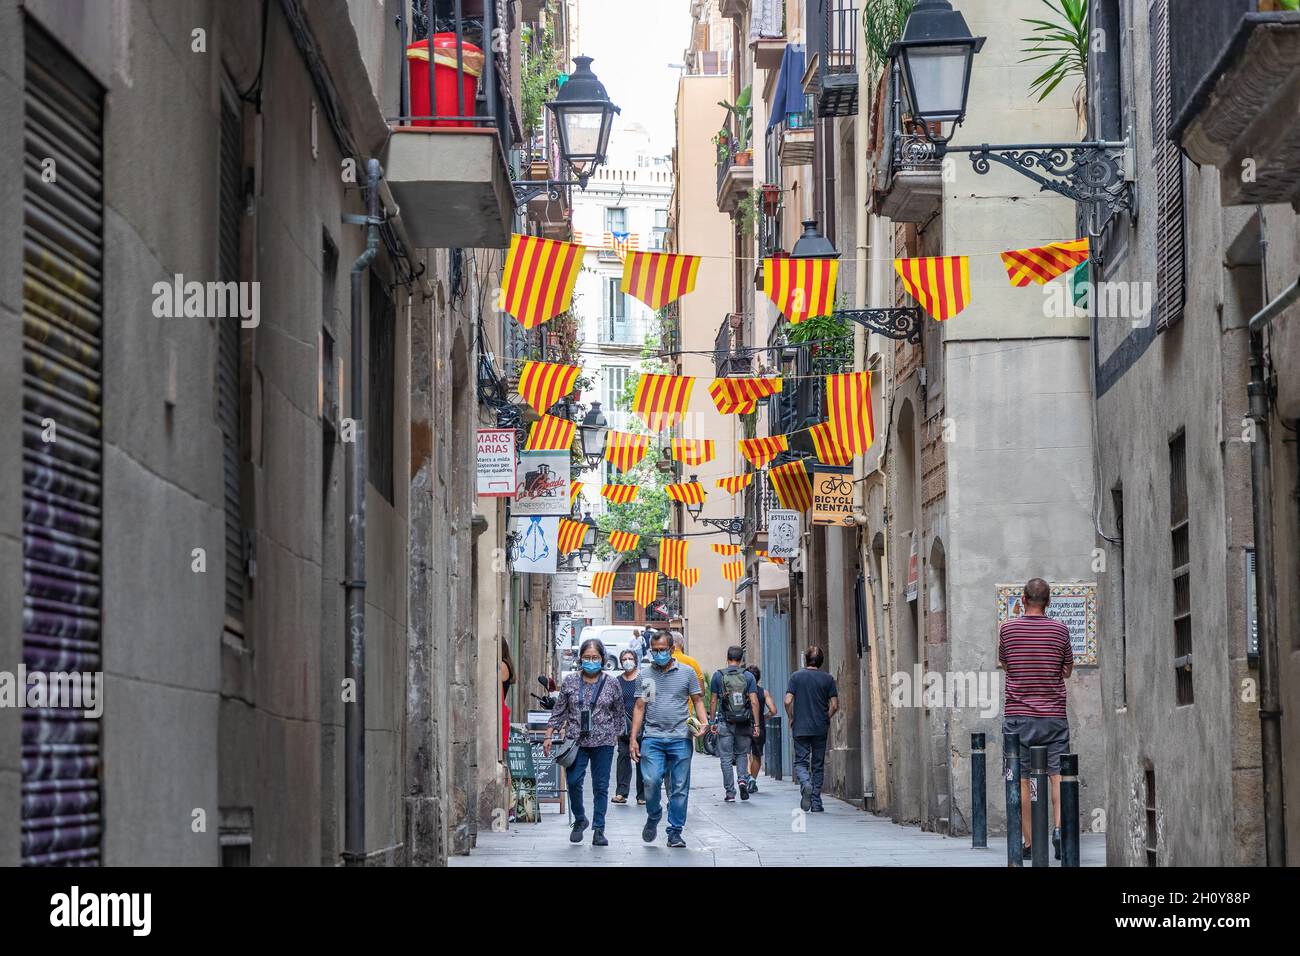 Barcelone, Espagne - 27 septembre 2021 : rue de Barcelone ornée de drapeaux de Catalogne Banque D'Images